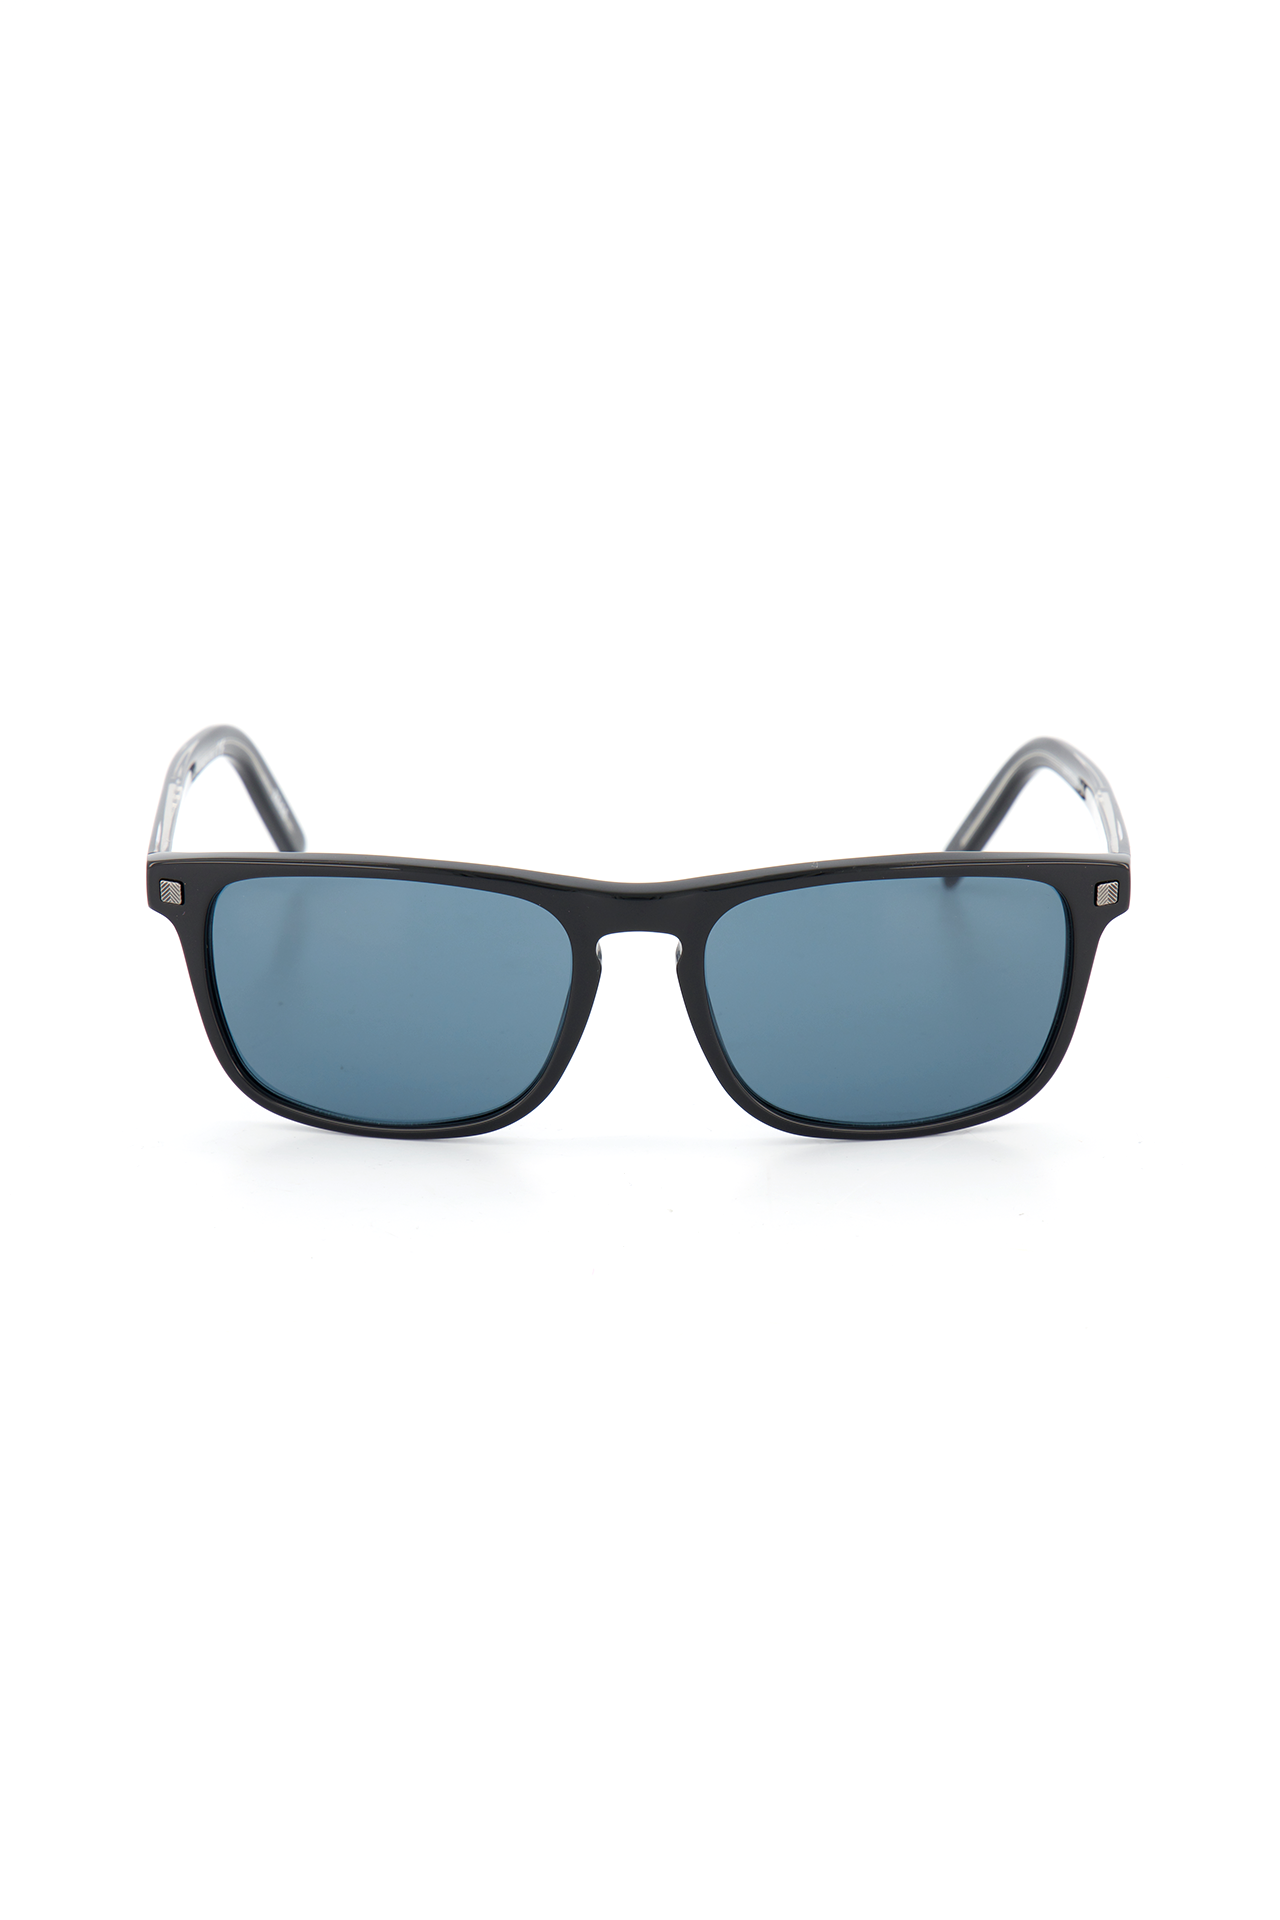 Ermenegildo Zegna Men's Triple Xxx Logo Sunglasses | A.K. Rikk's